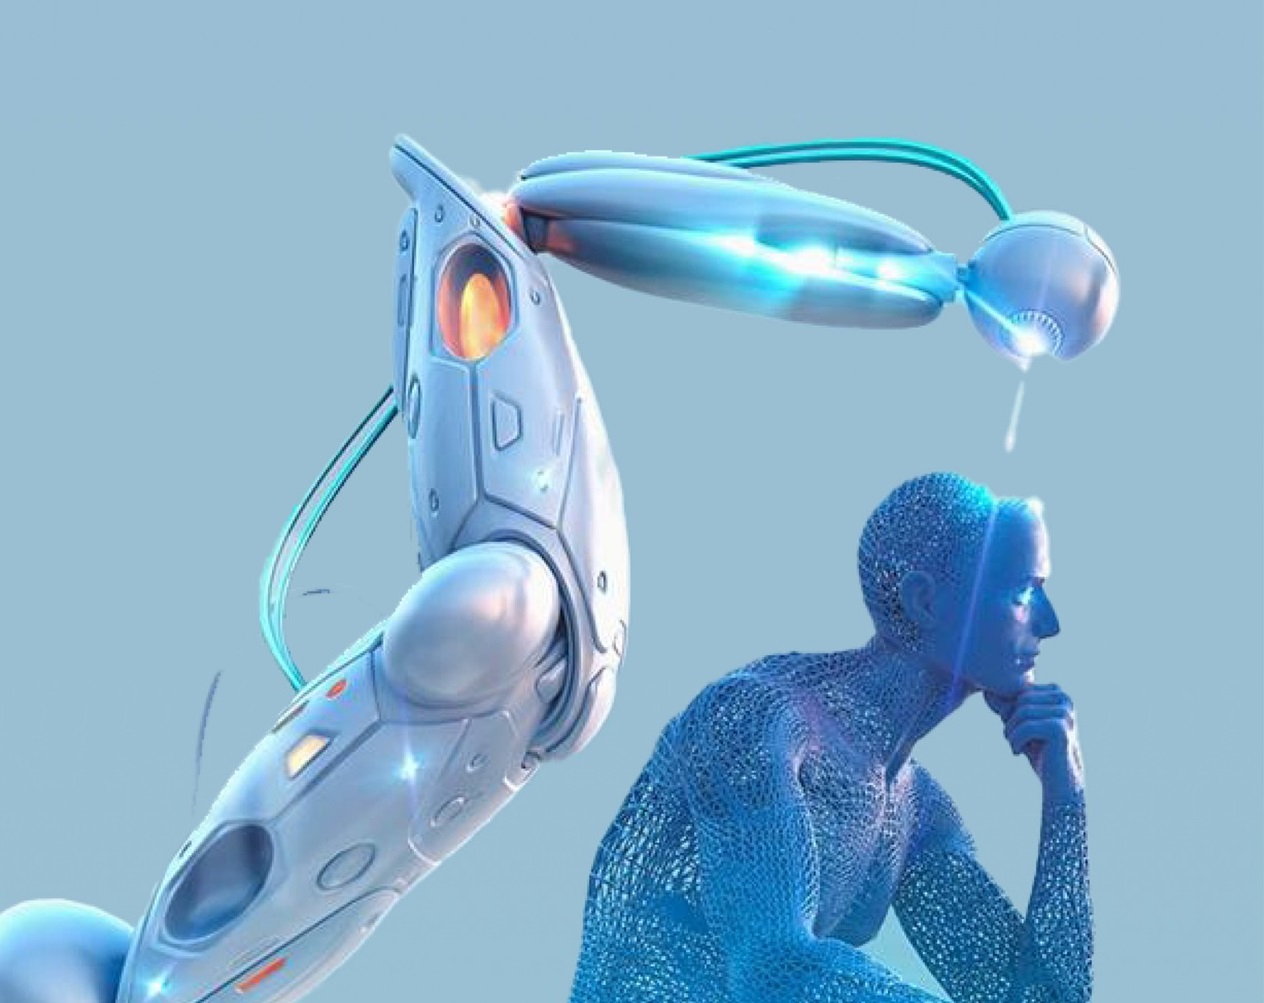 Рынок медицинской робототехники увеличится на $8,9 млрд к 2026 году